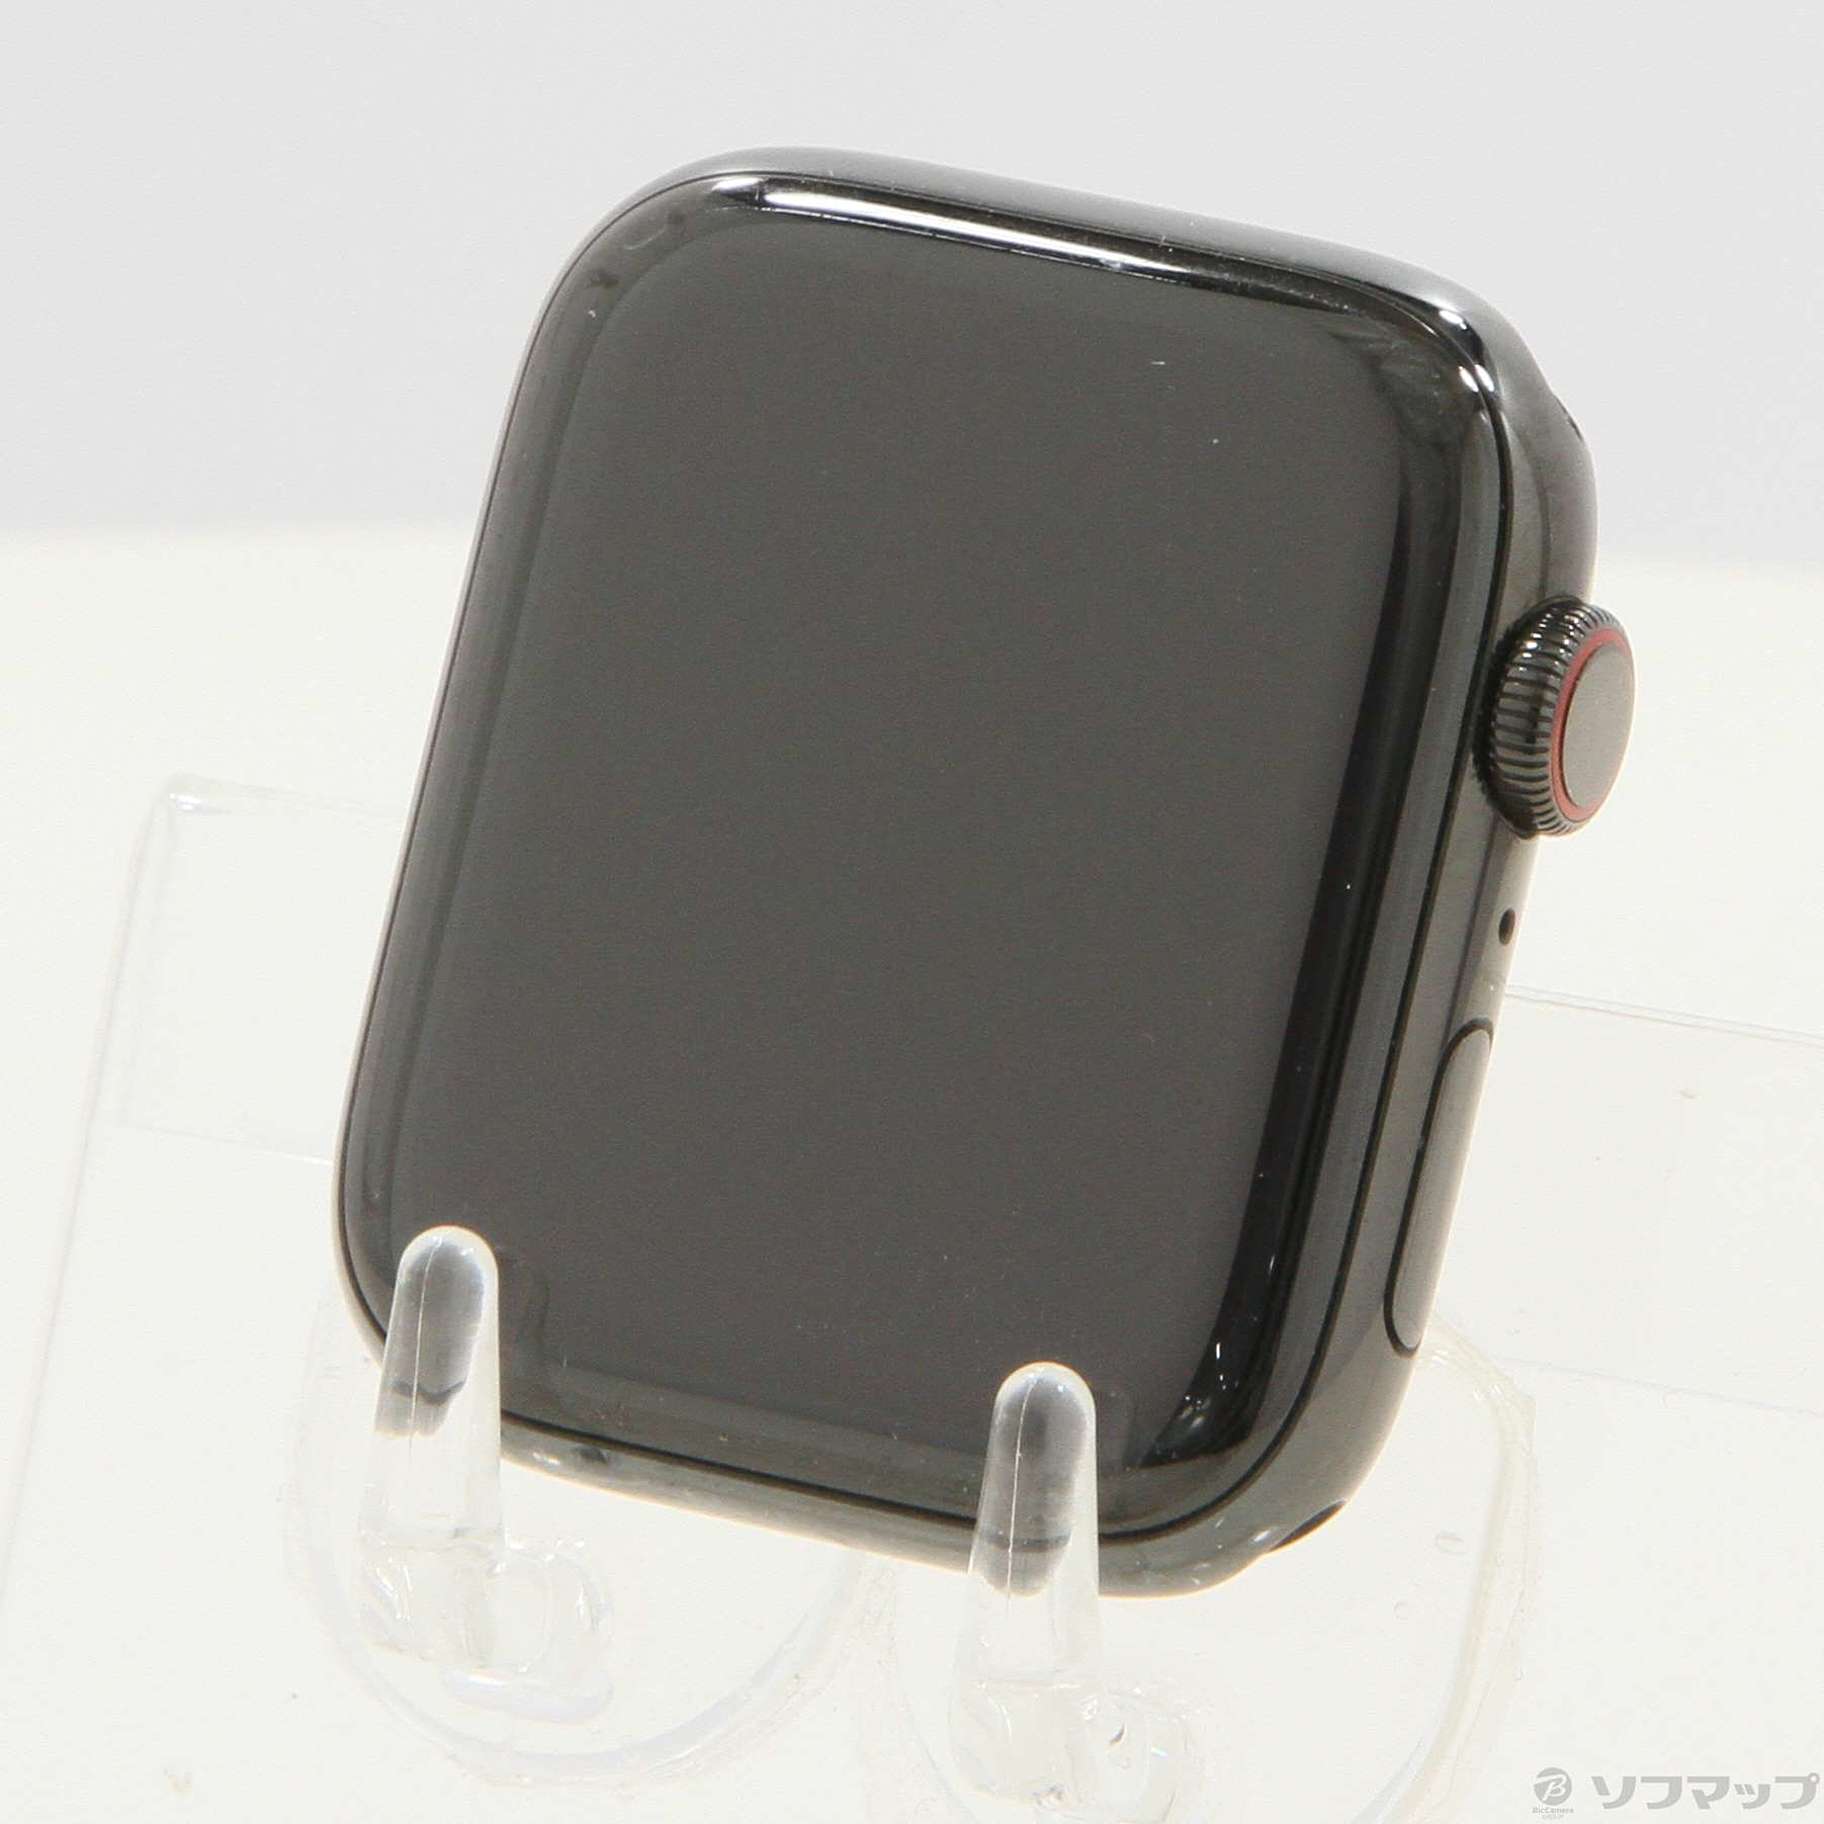 Apple Watch series4 セルラー 44mm ブラックステンレス